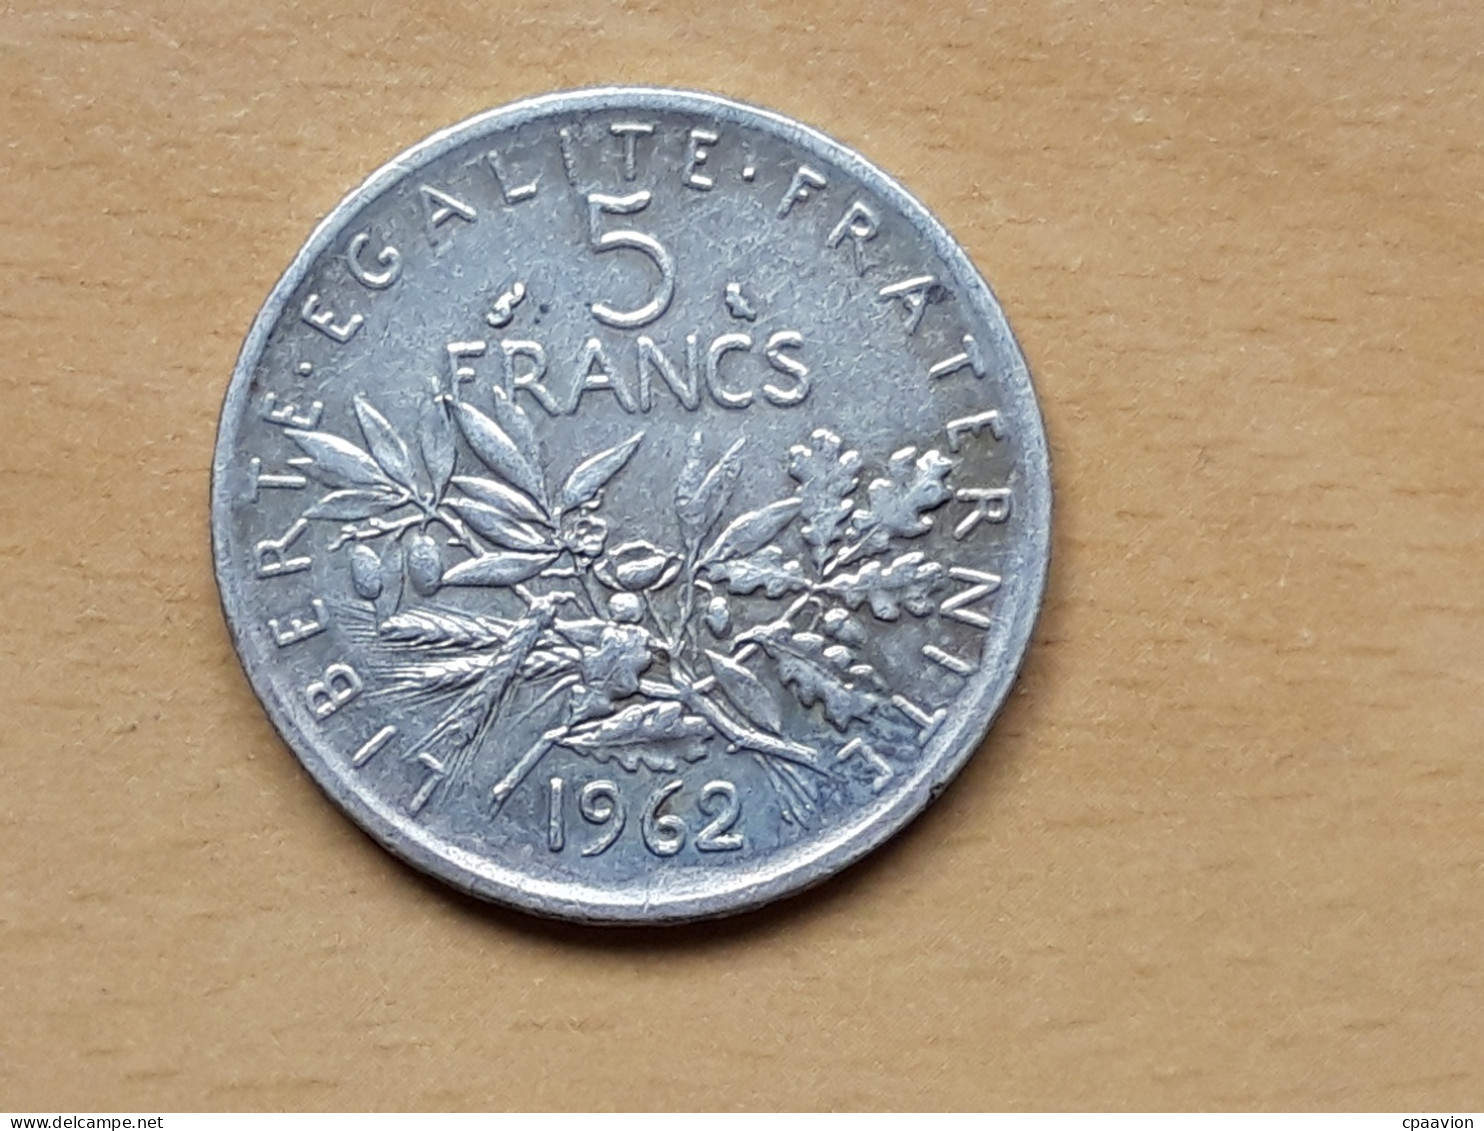 5 FRANCS SEMEUSE ARGENT ANNEE 1962 - 100 Francs